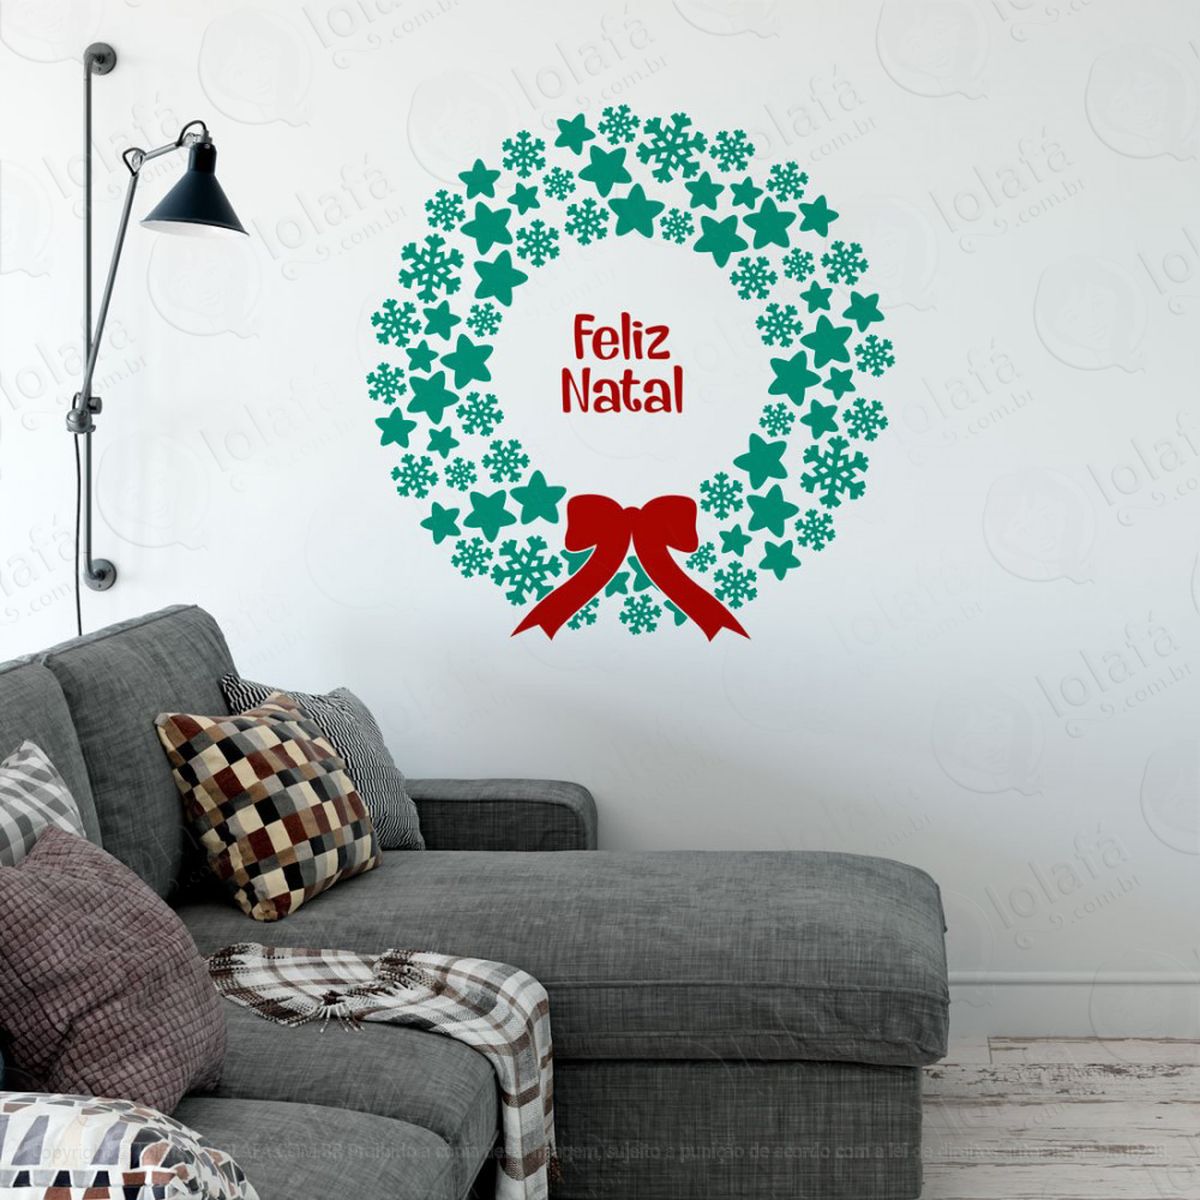 frase guirlanda feliz natal adesivo de natal para vitrine, parede, porta de vidro - decoração natalina mod:346